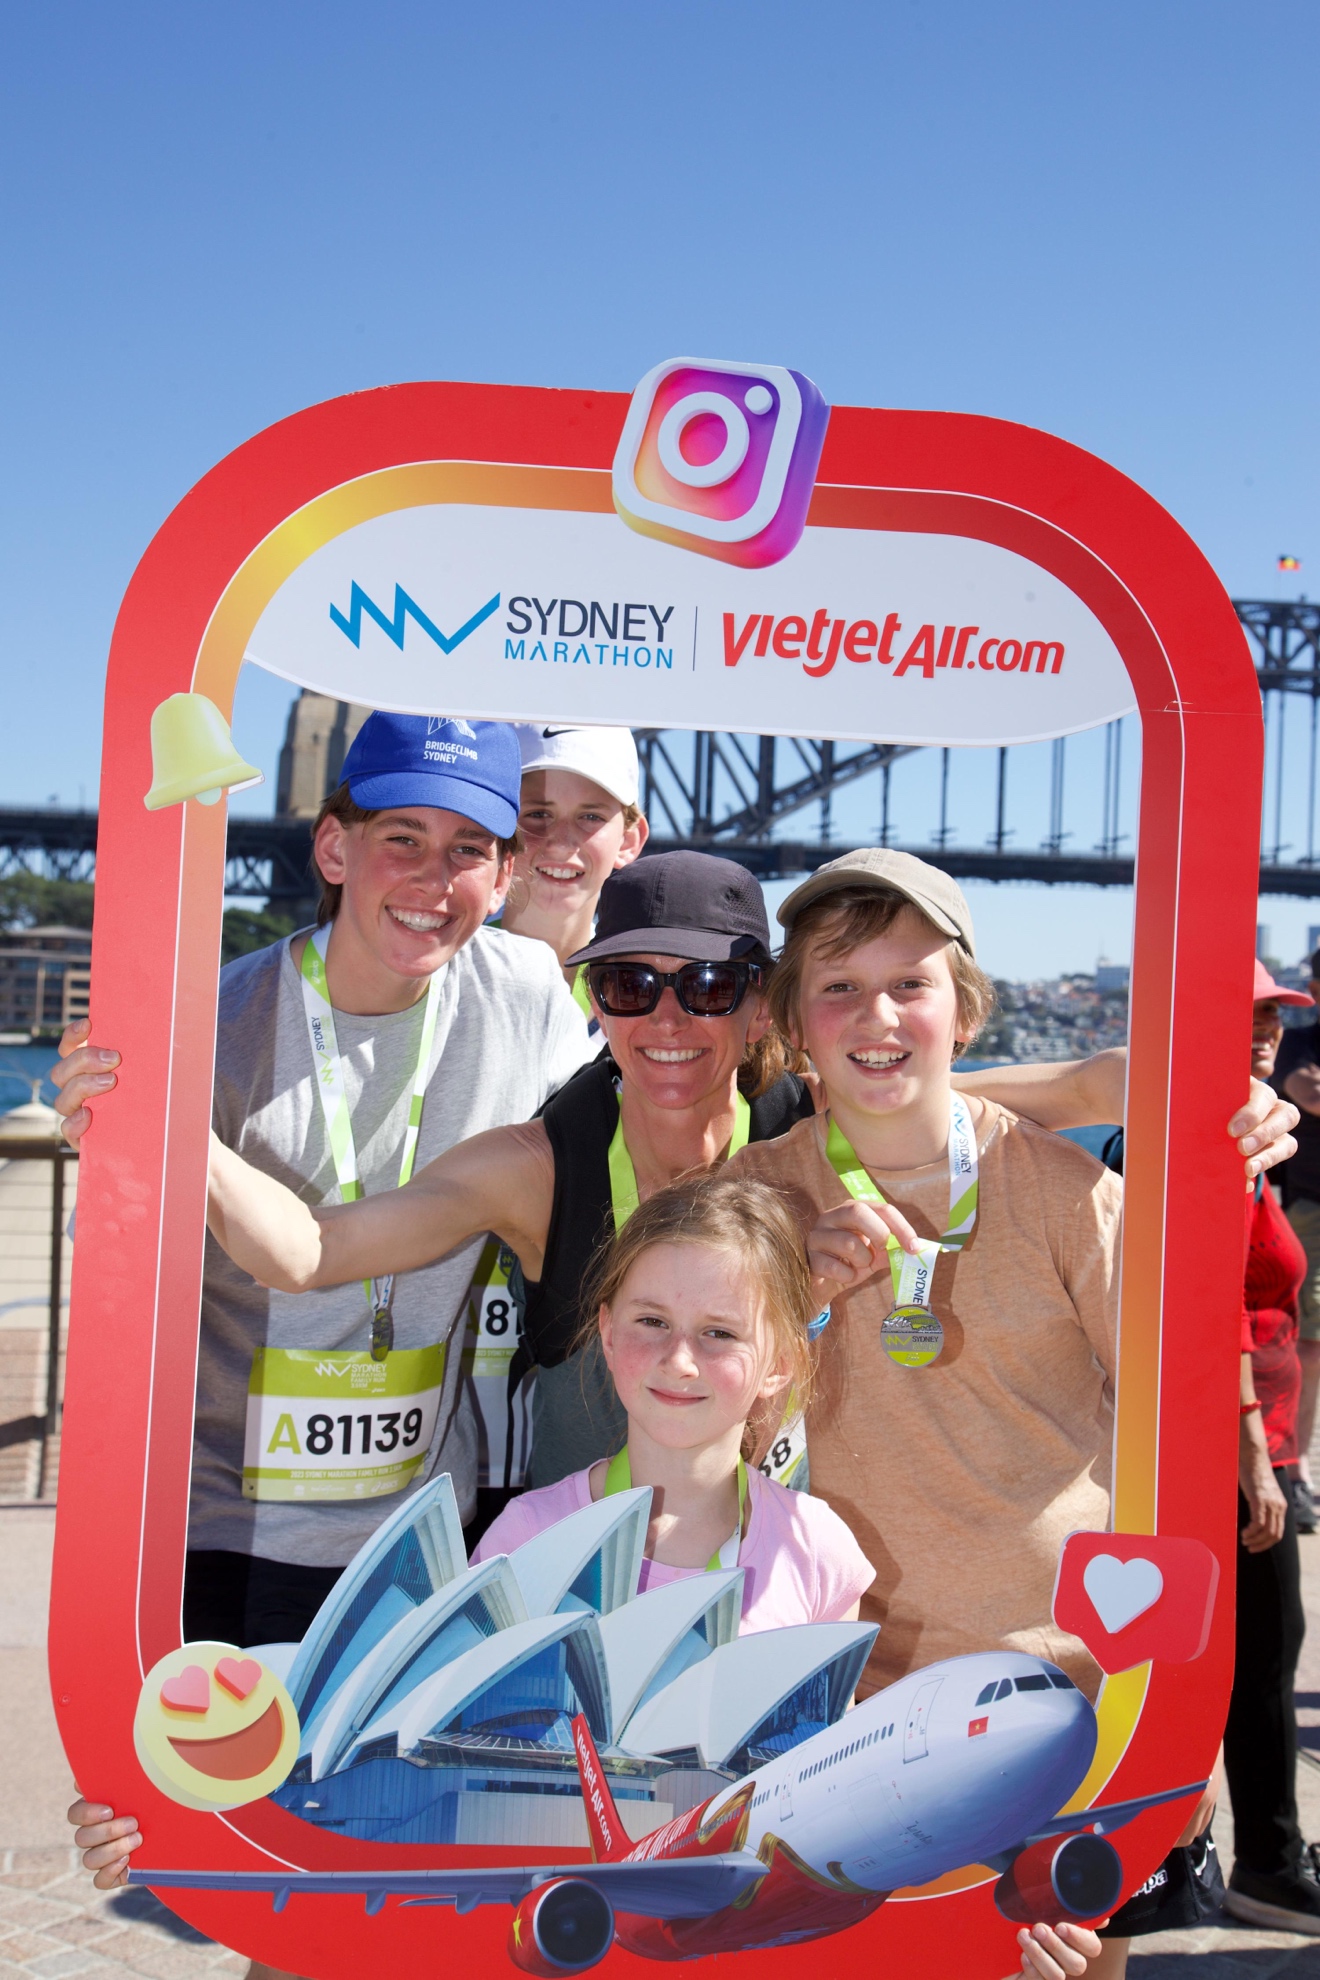 Bay đến Sydney chạy Marathon cùng Vietjet để không bỏ lỡ đường chạy đẹp nhất hành tinh - Ảnh 9.